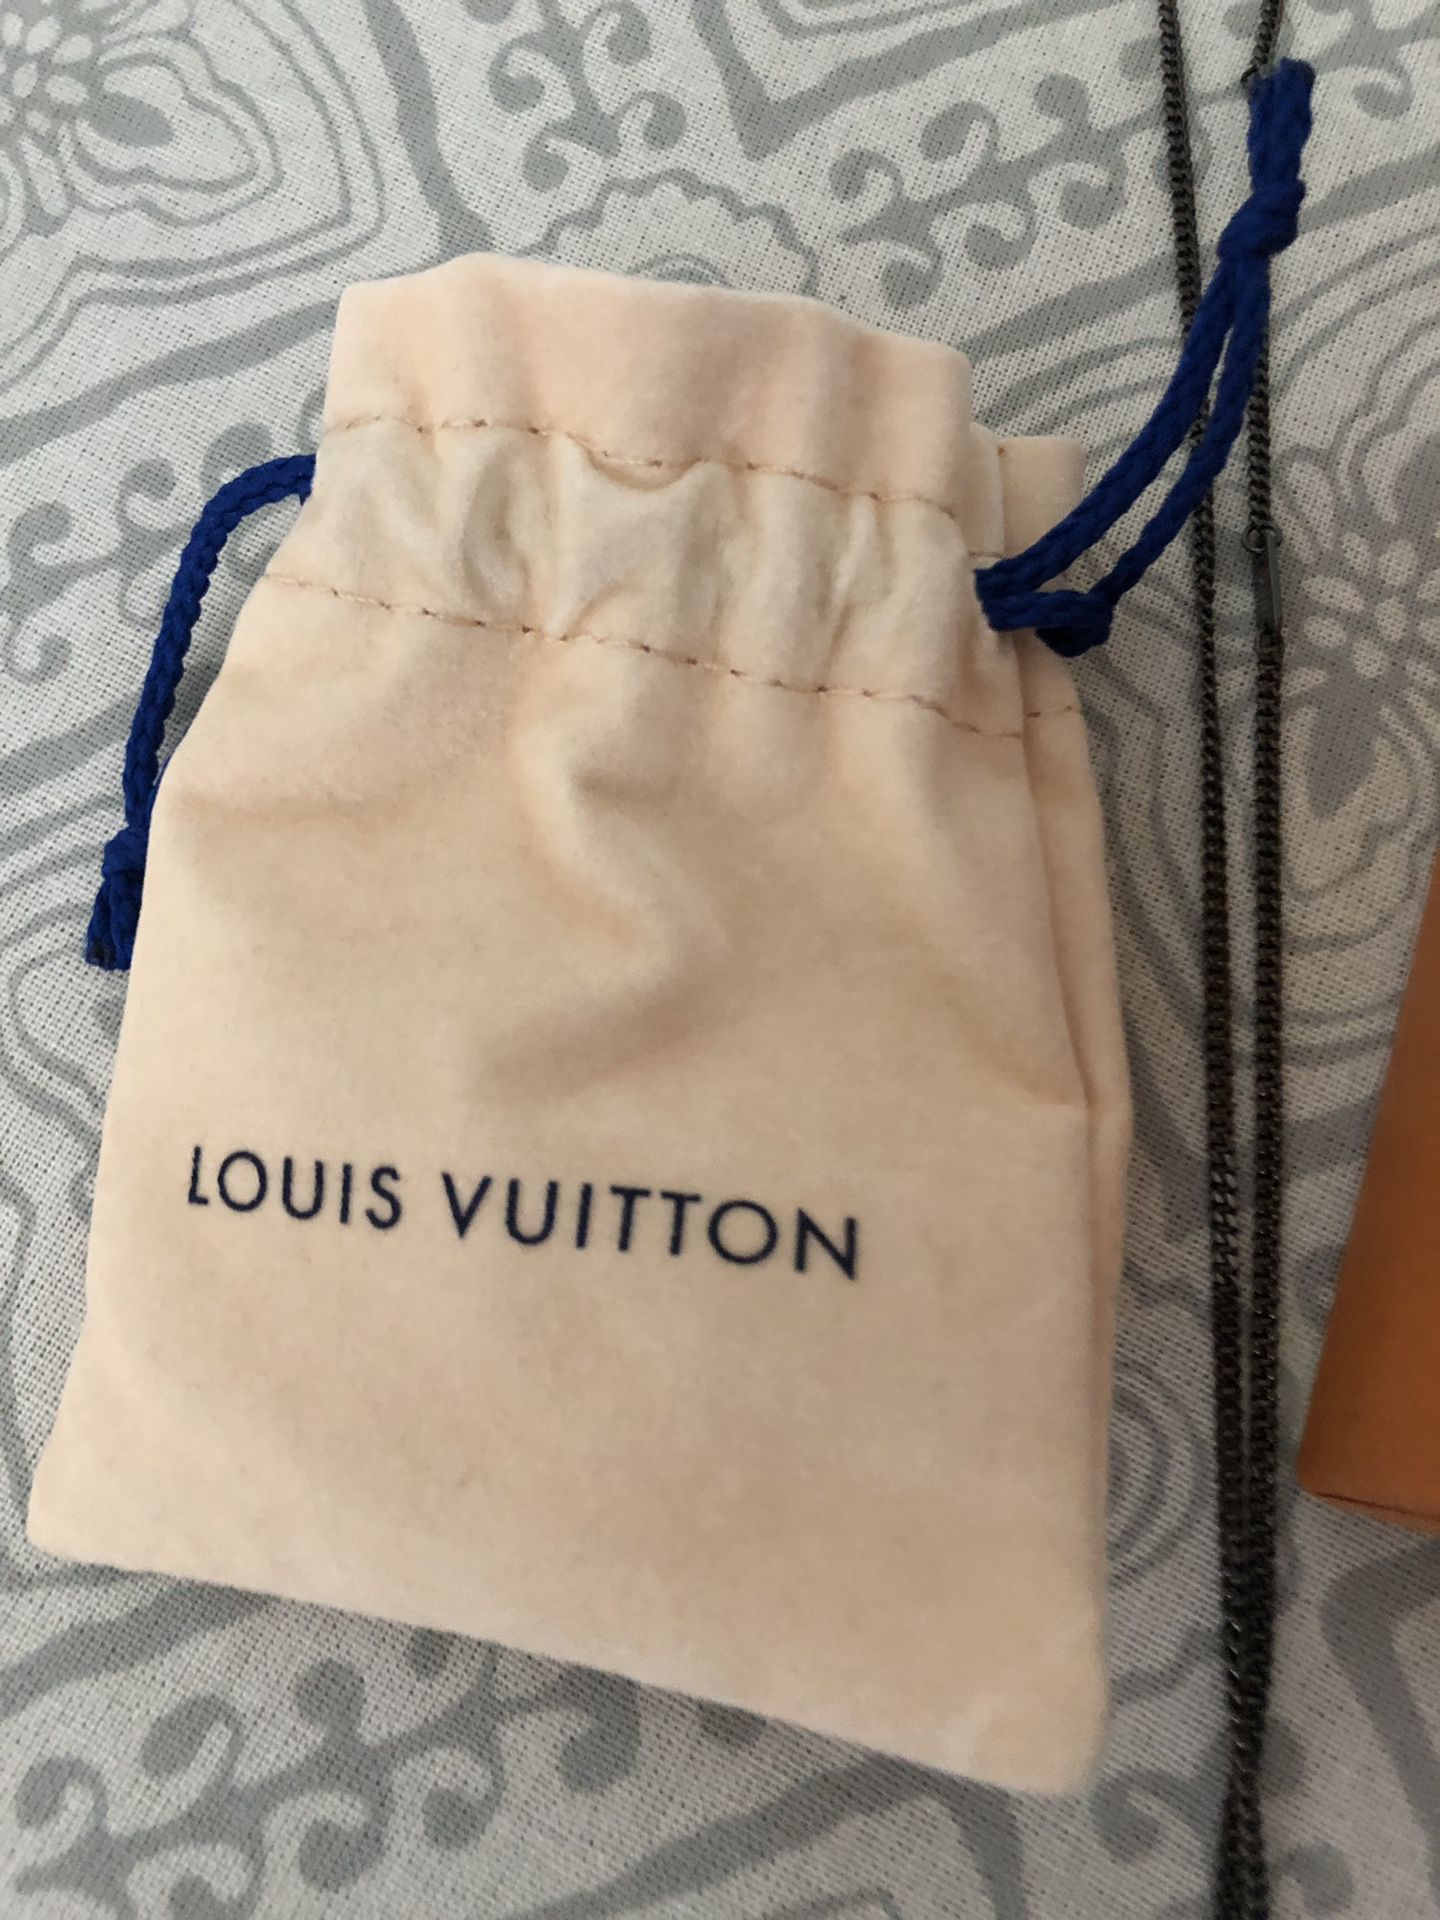 Louis Vuitton LOUIS VUITTON BY KIM JONES UPSIDE DOWN NECKLACE